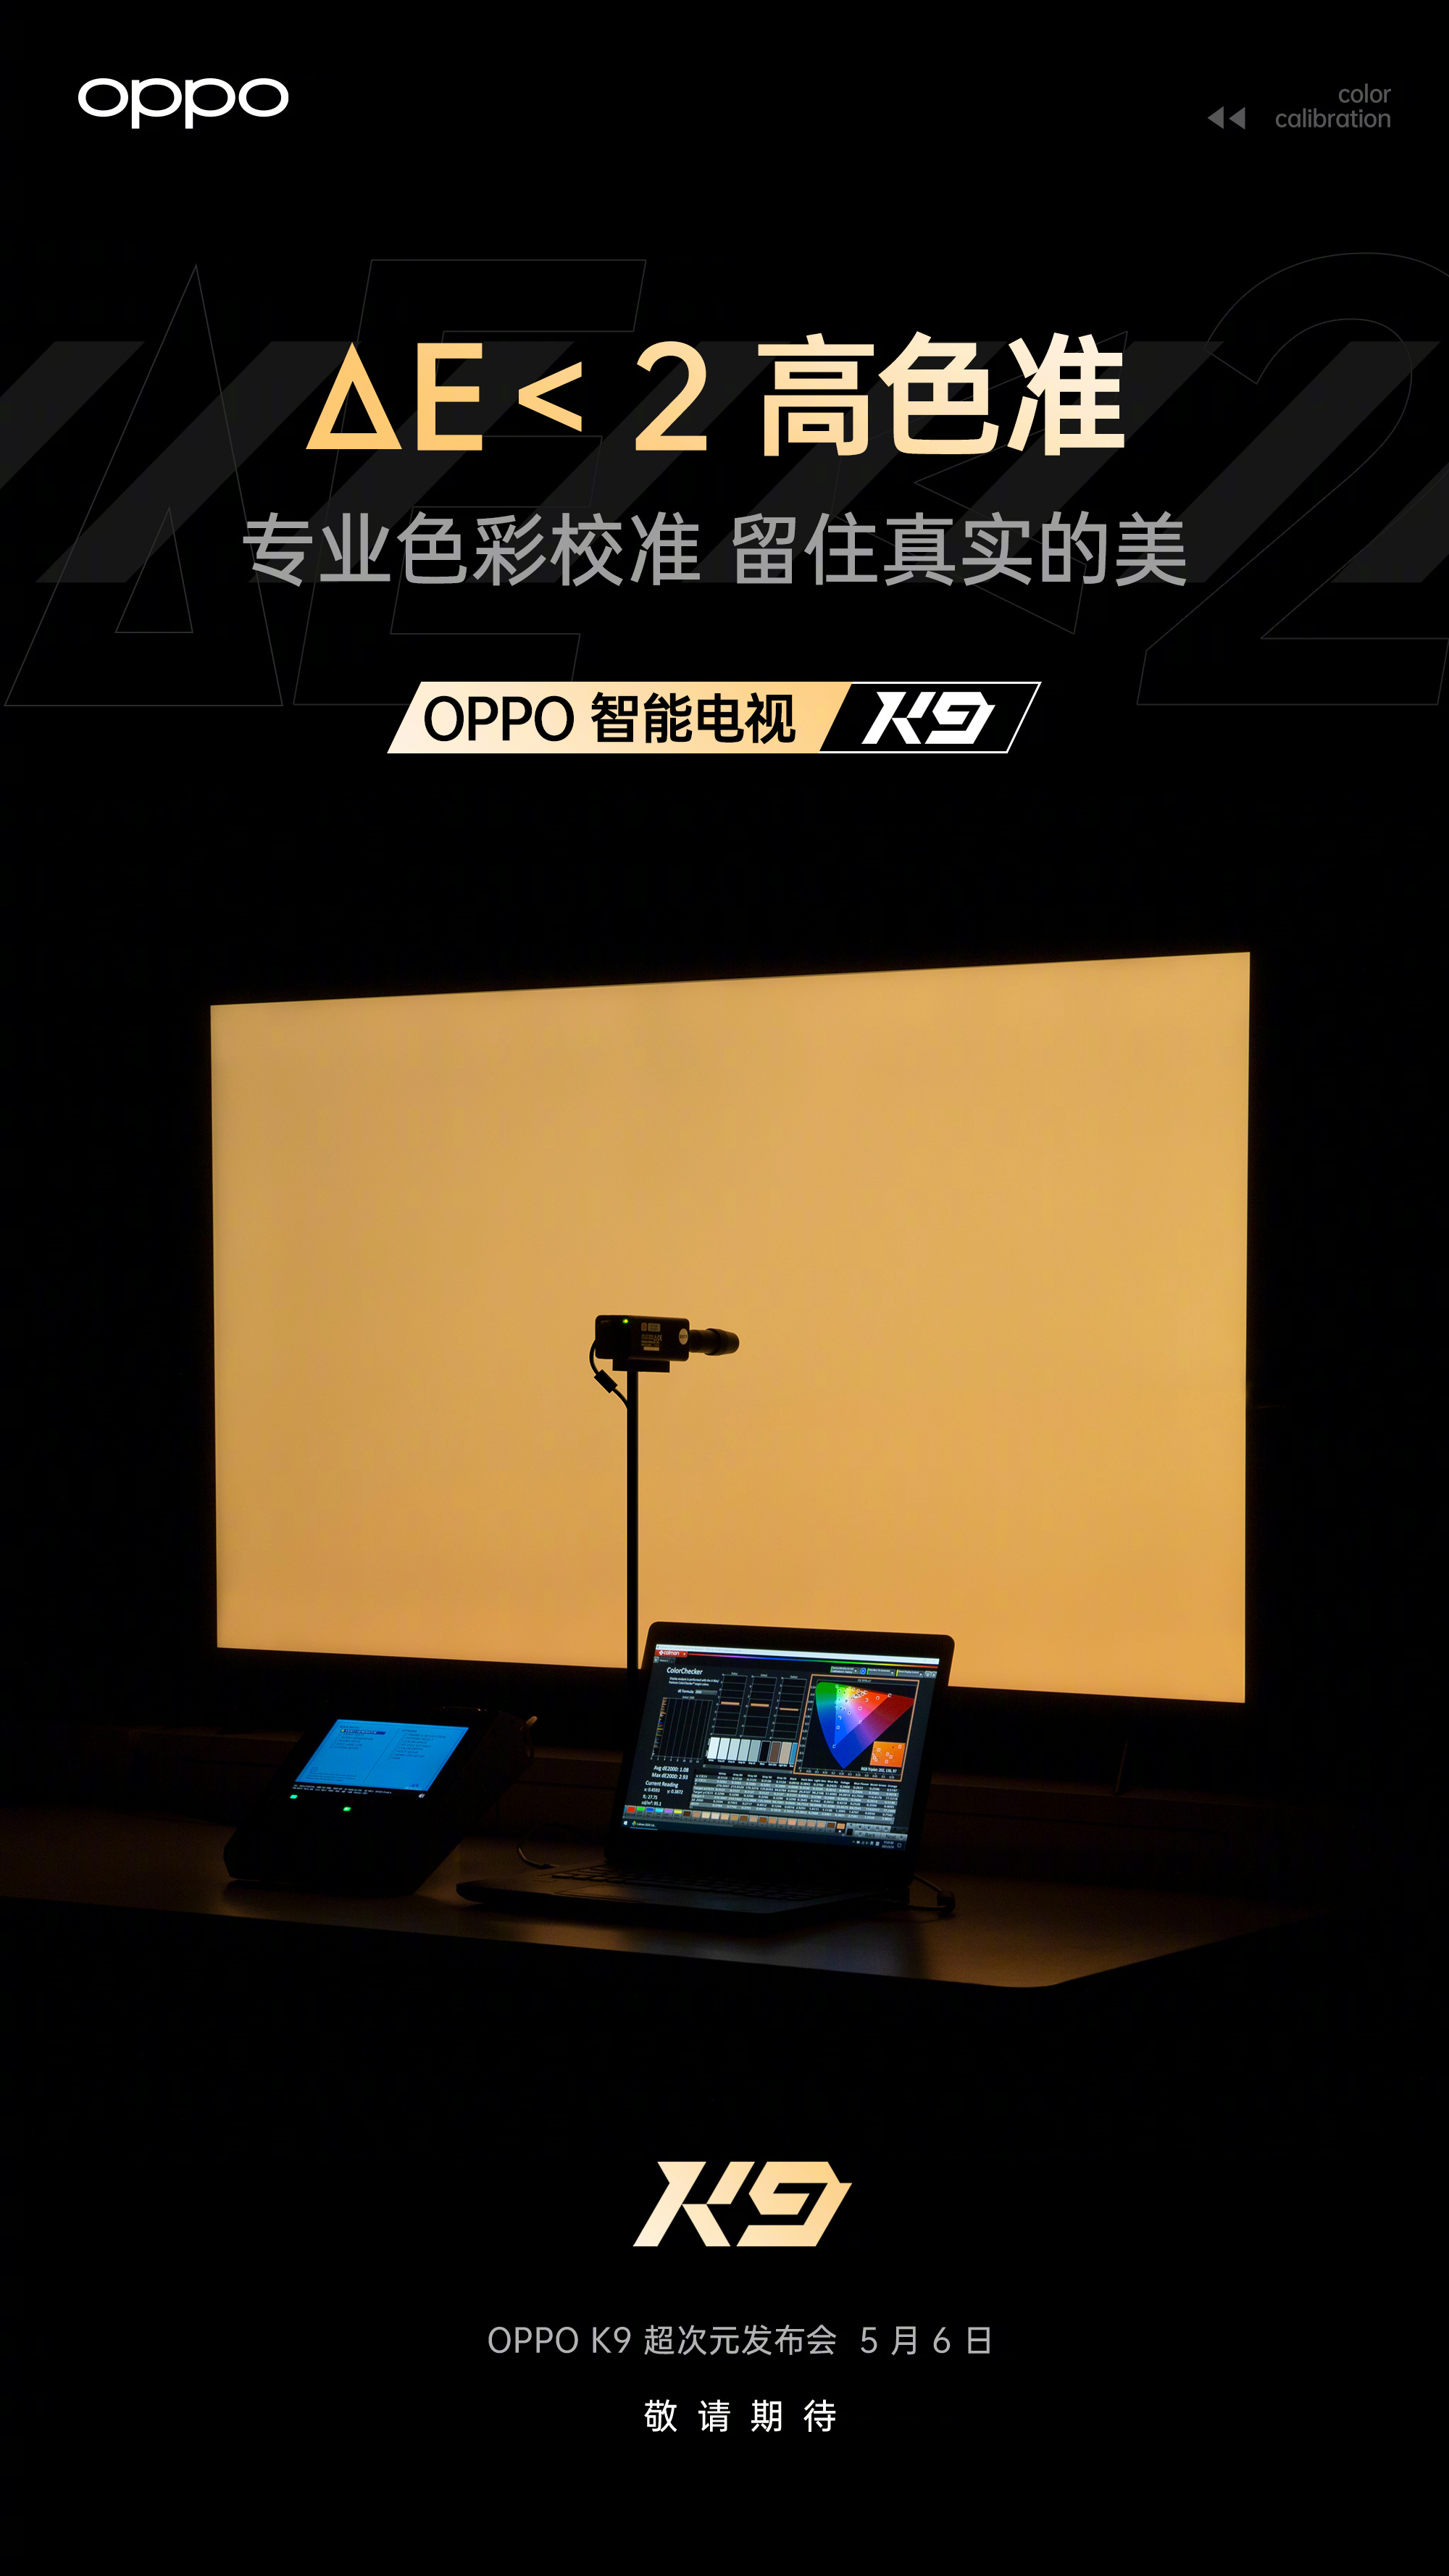 OPPO Smart TV K9